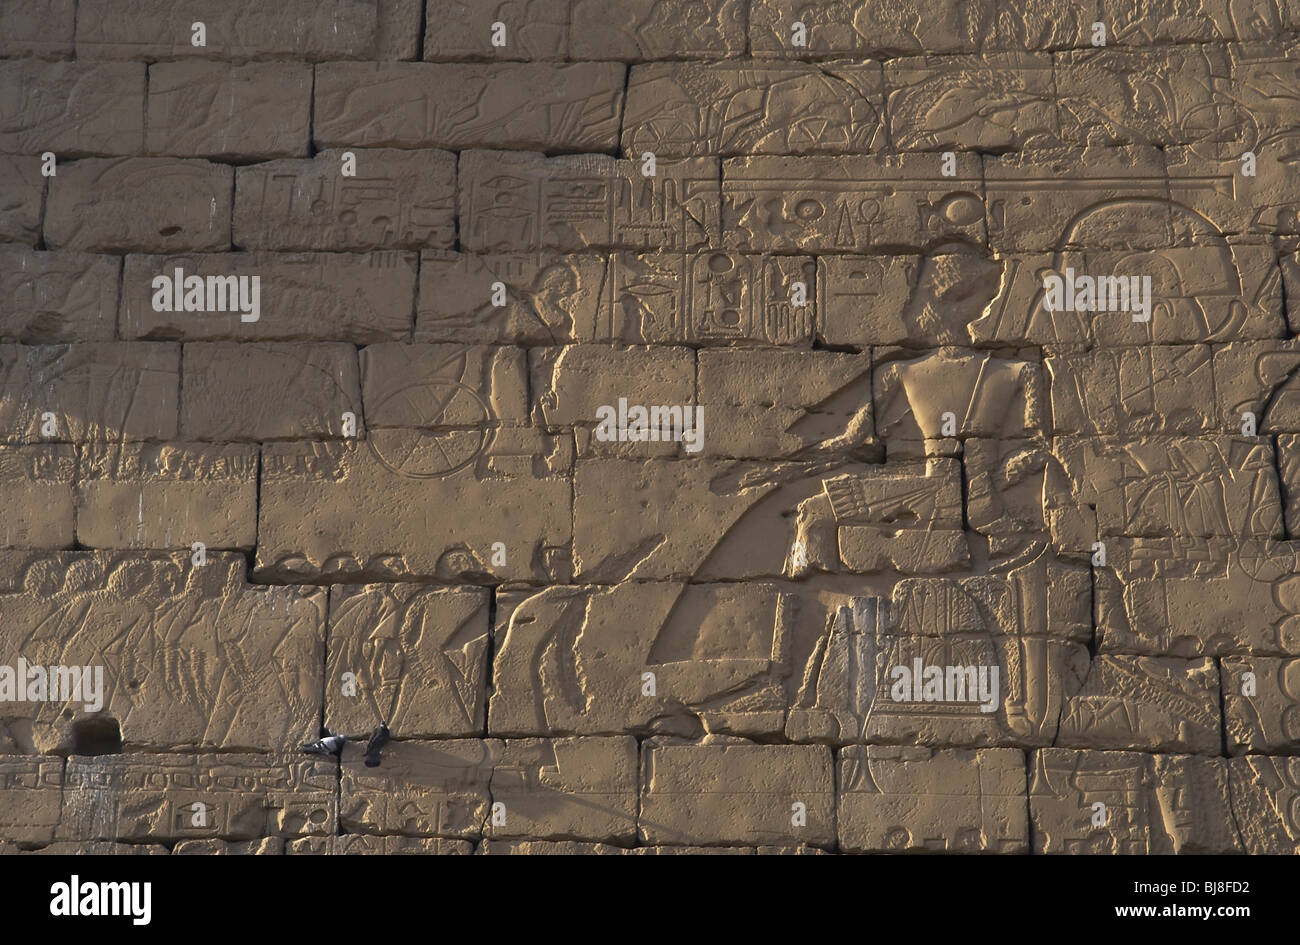 RAMSES II è rimasto seduto per un consiglio con i suoi ufficiali, durante la campagna militare contro gli Ittiti. Luxor. L'Egitto. Foto Stock